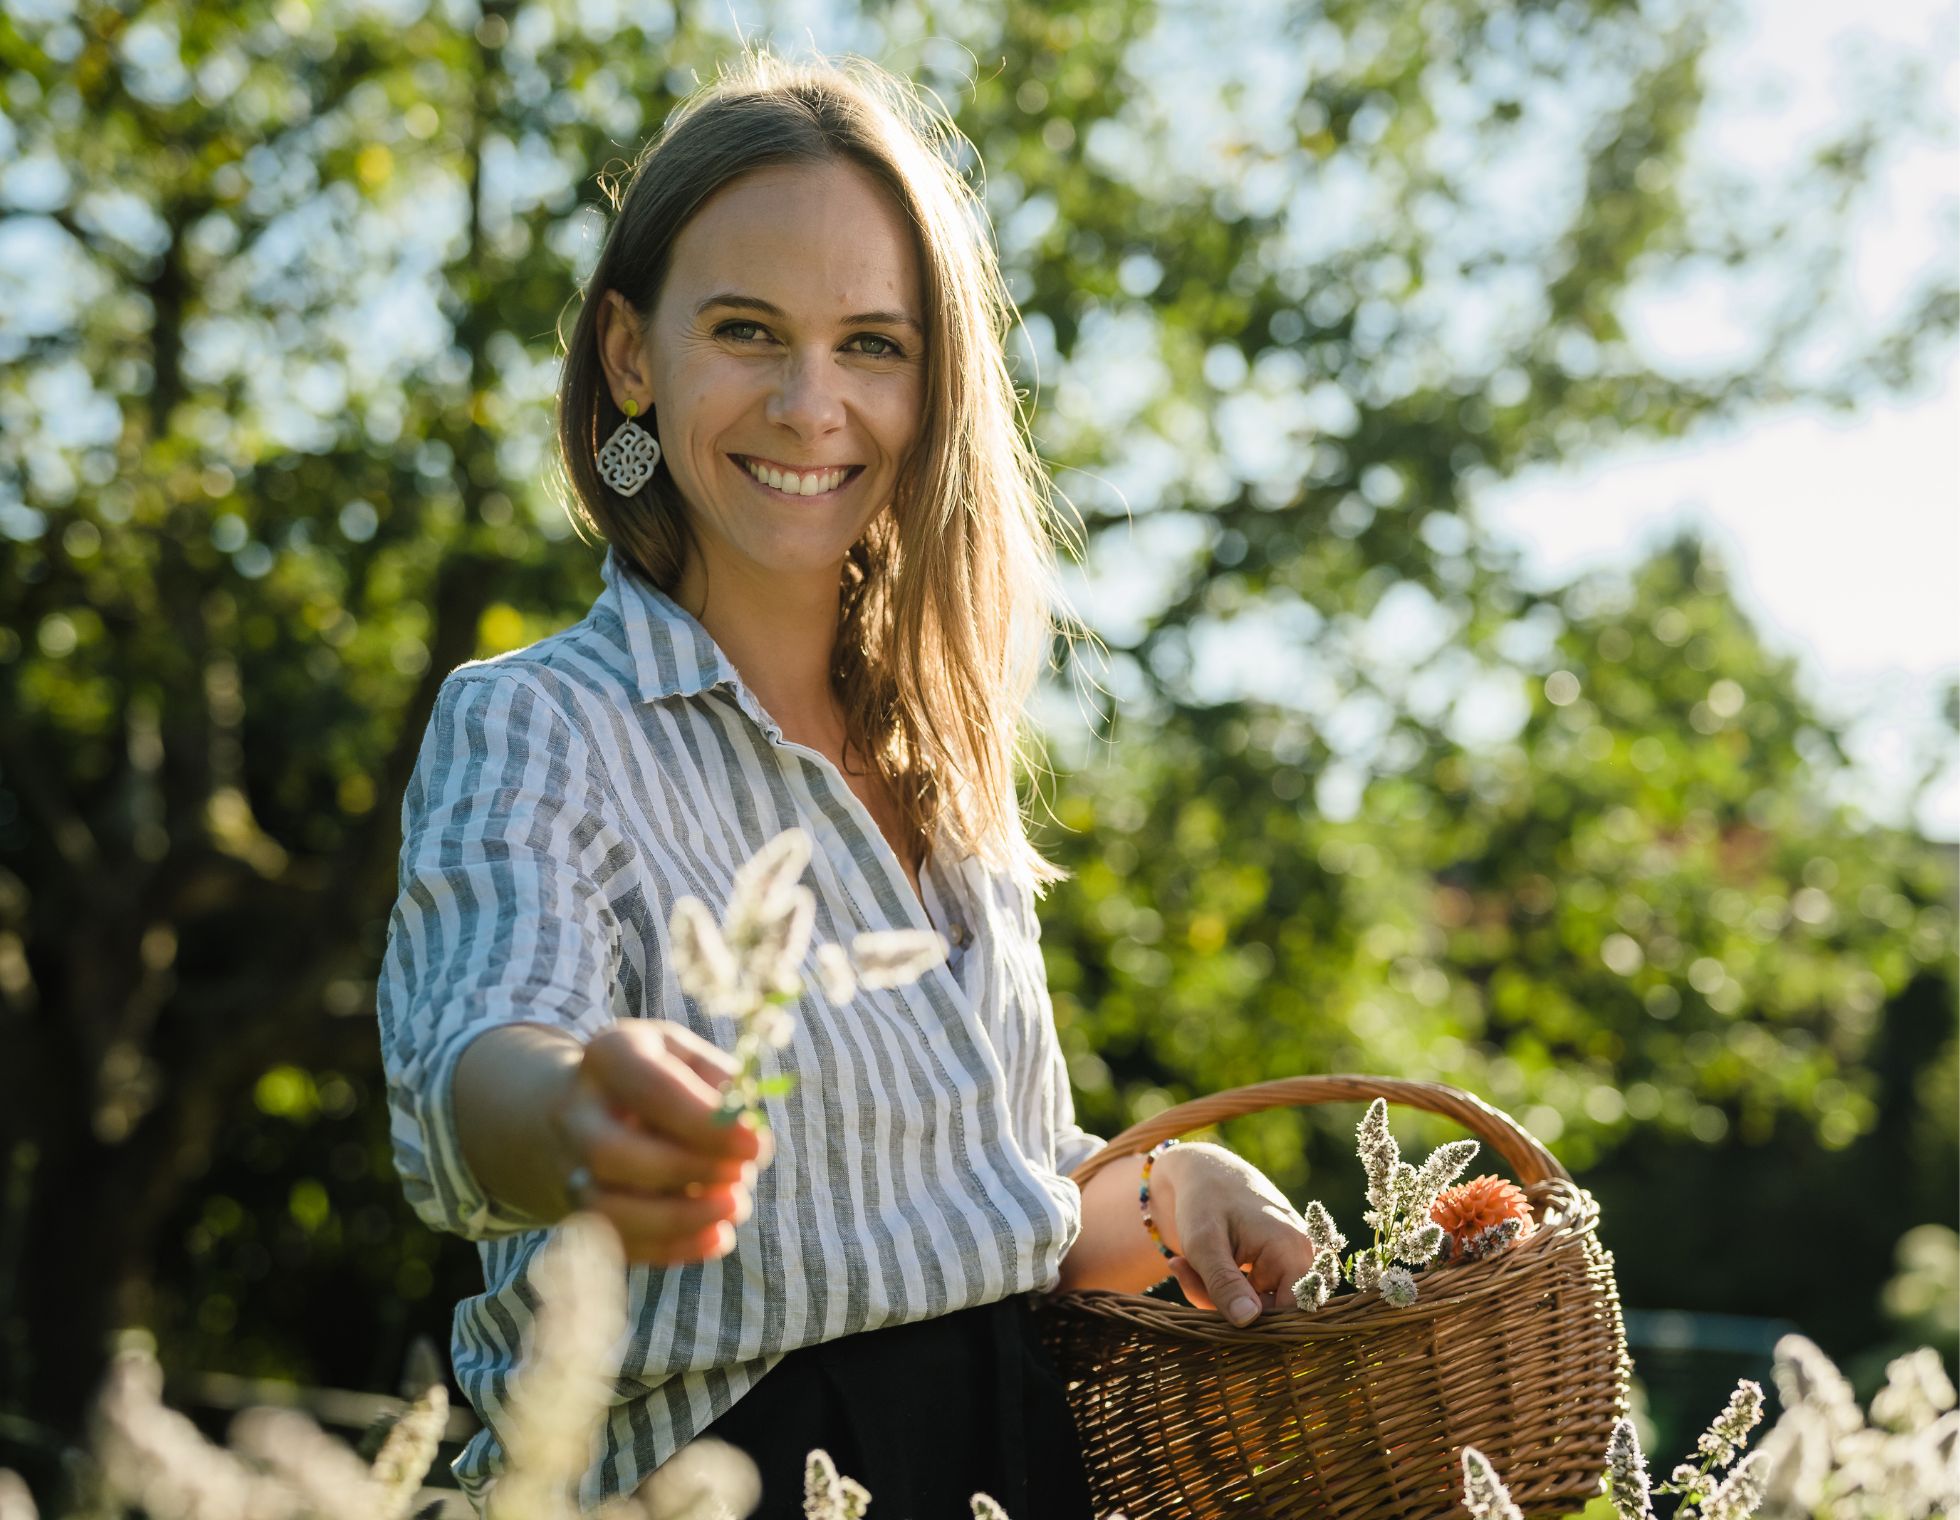 Erfahrene Diätologin Stefanie Bart beim Blumenpflücken – ein Sinnbild für ihre Hingabe an ausgewogene Ernährung und Förderung gesunder Lebensweisen. Sie bietet maßgeschneiderte Ernährungspläne und persönliche Beratung an.